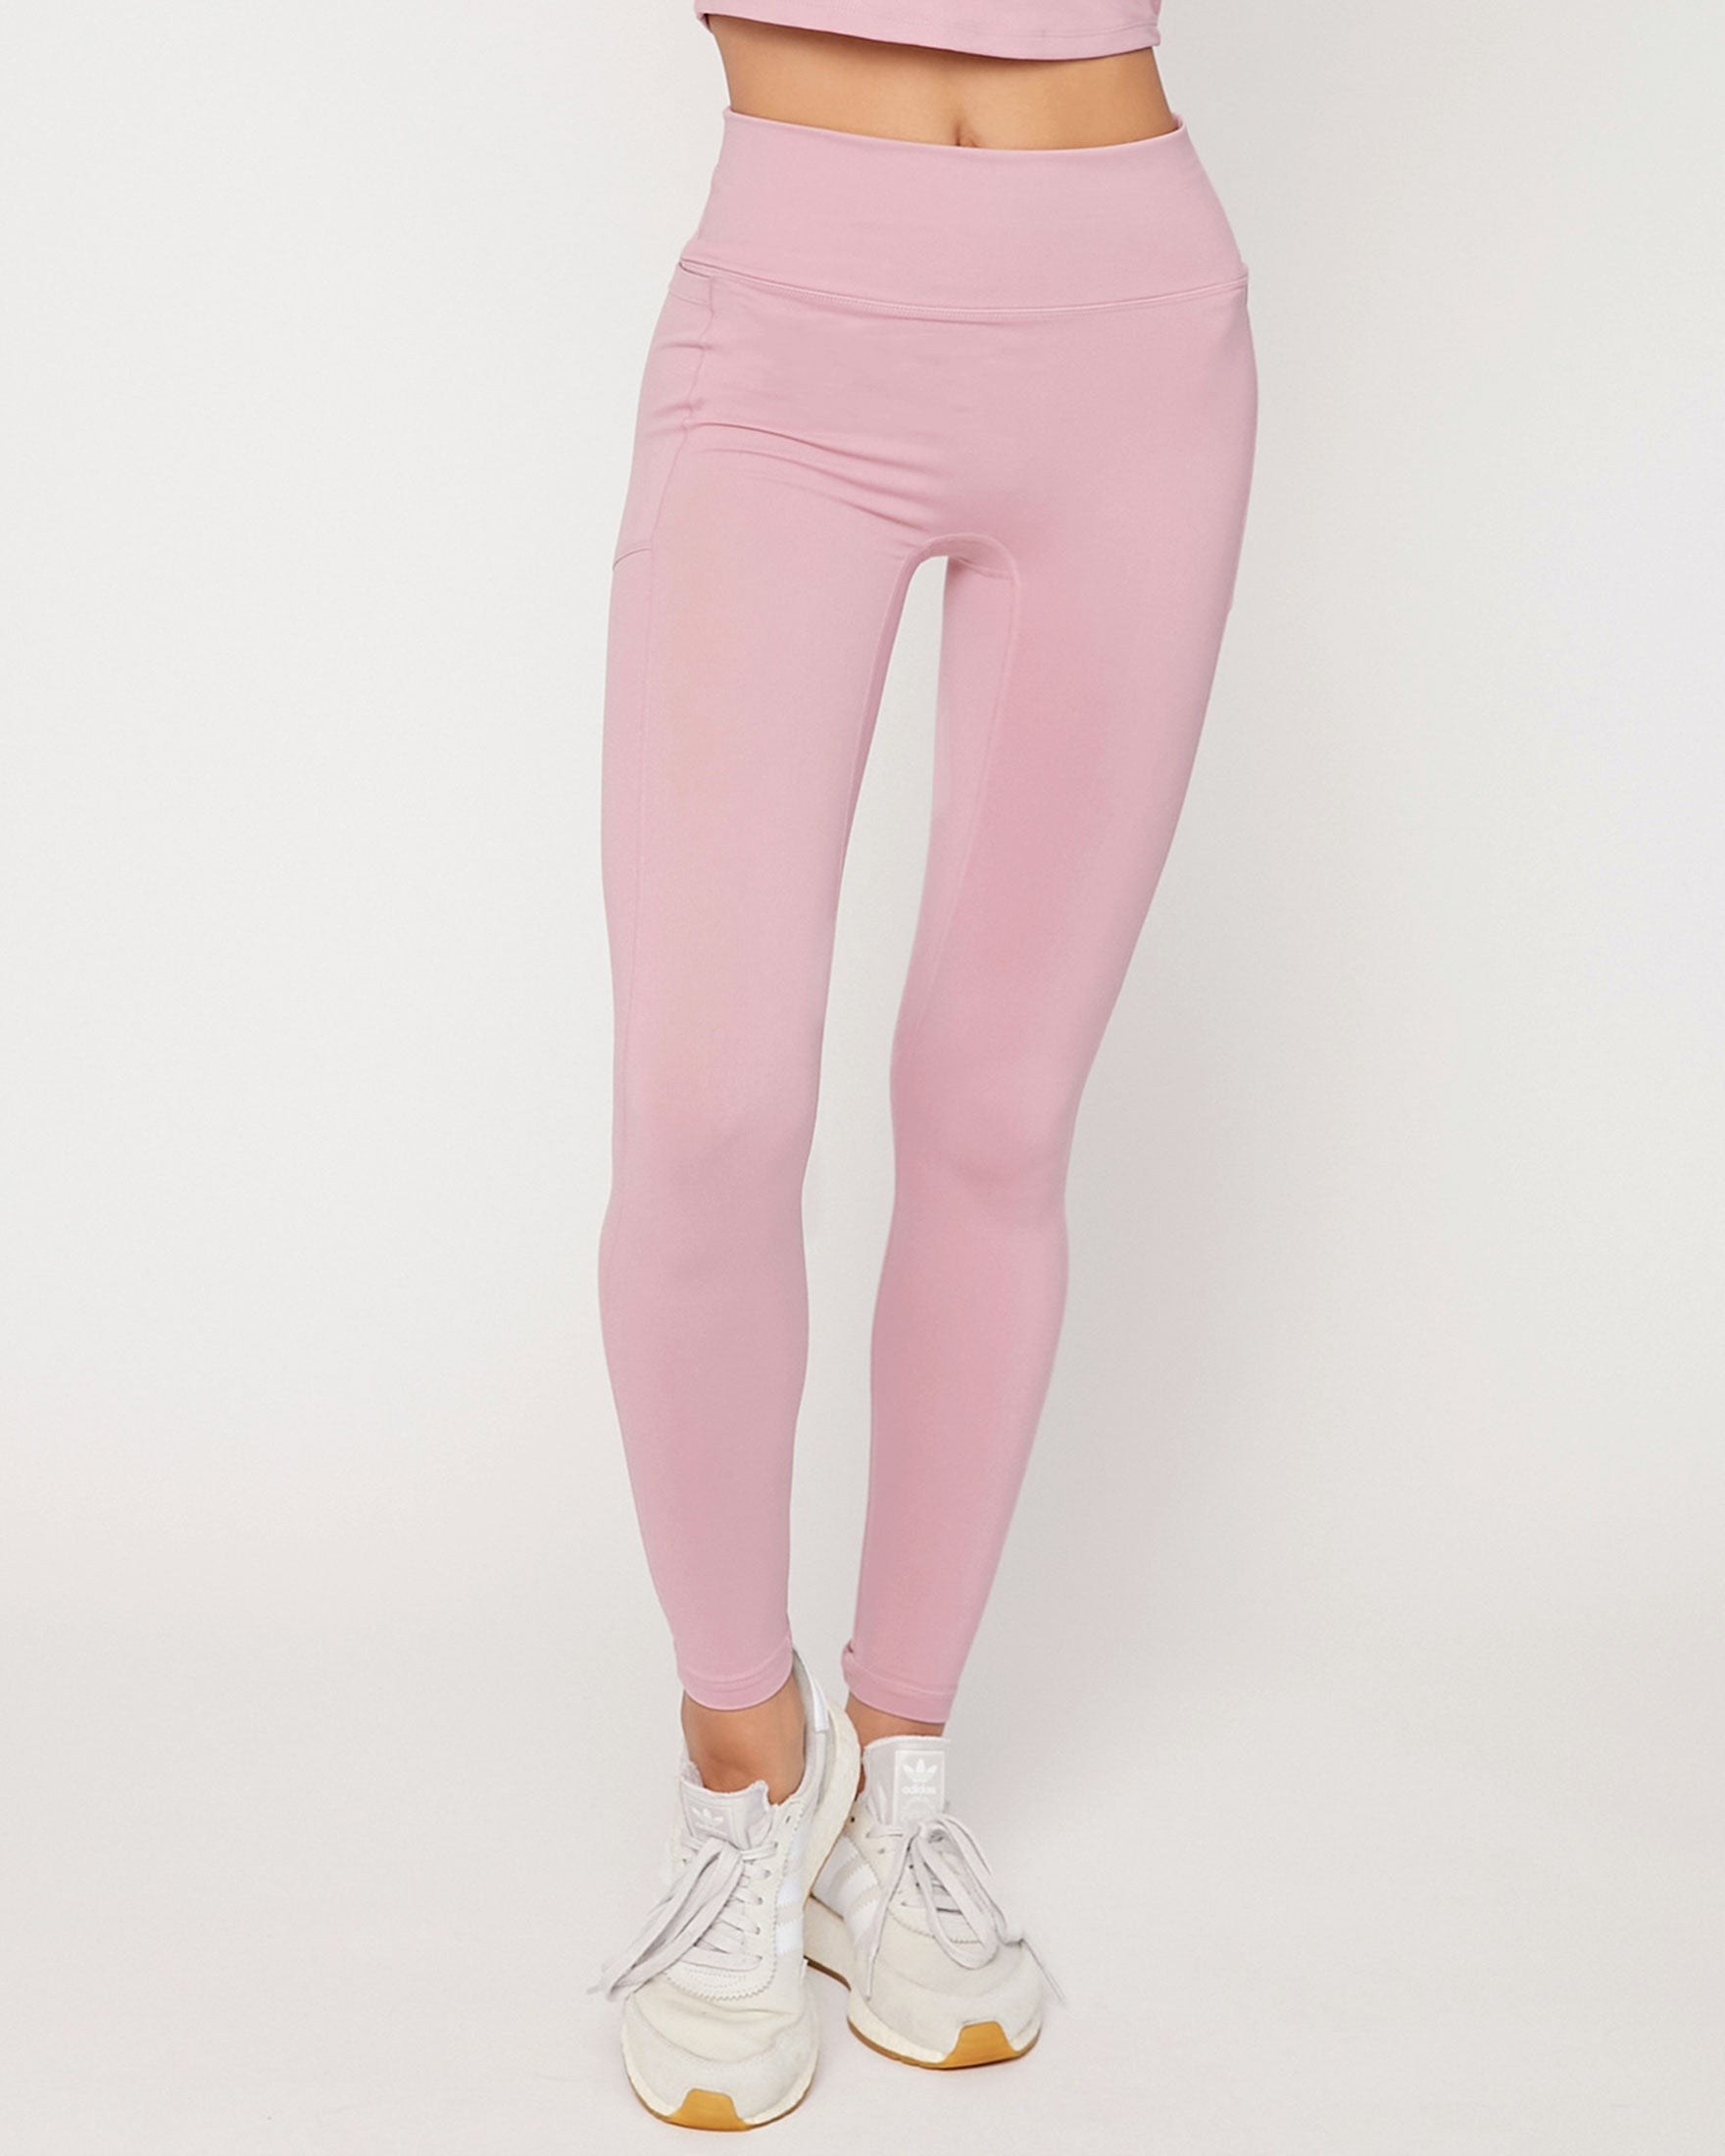 High Waist Legging Pink Foil Cheetah – Wear It To Heart